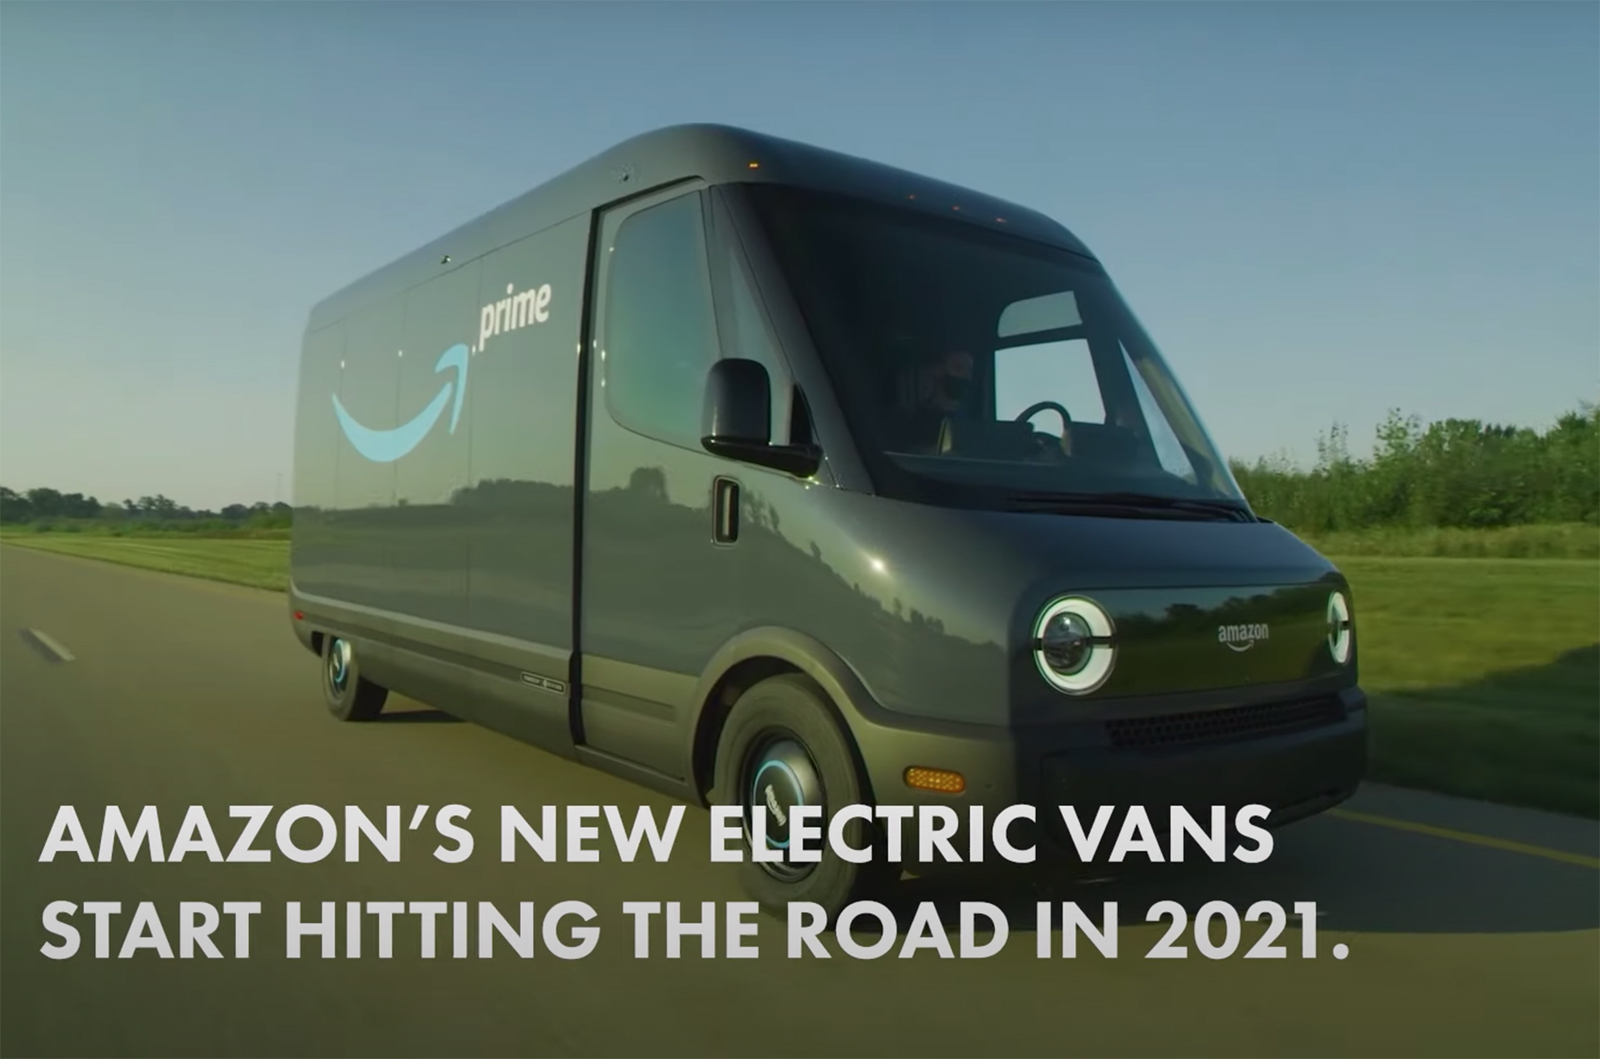 nearly new van deals